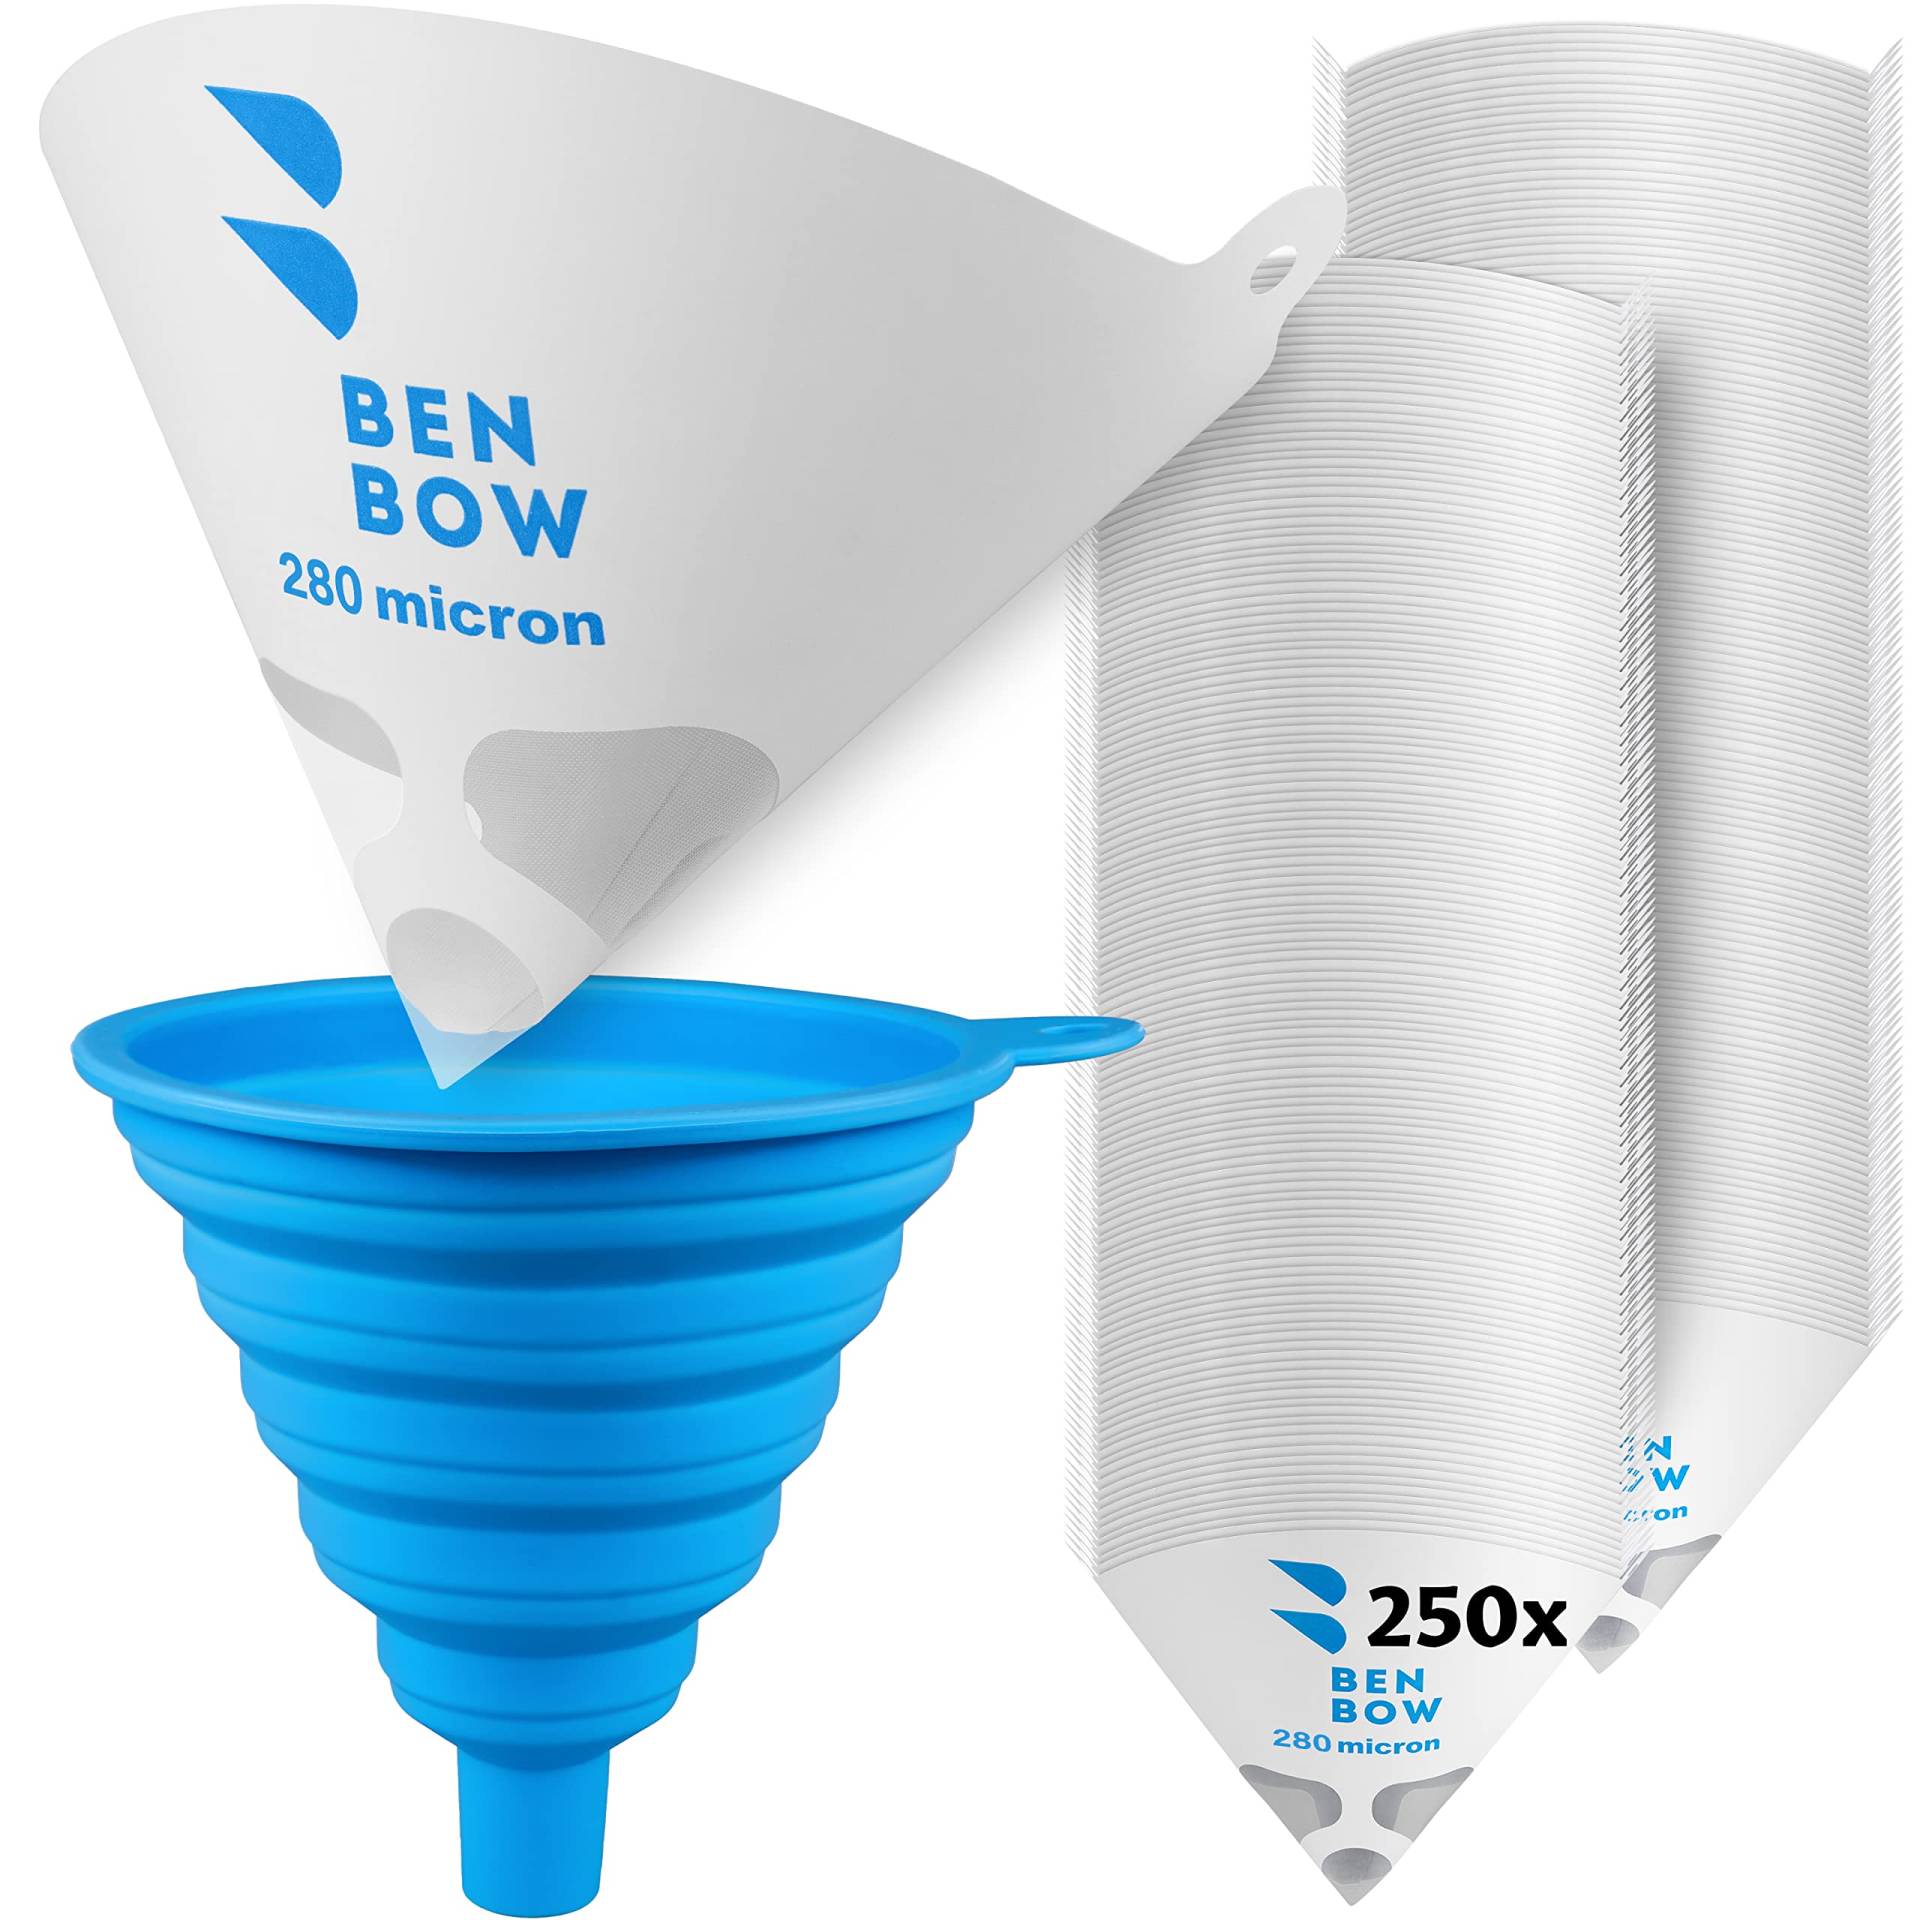 BenBow Lacksieb 280µ x 250 Stück - Einweg-Papierfilter mit Nylongewebe und praktischer Silikontrichter - zum Filtern von Lacken und Farben vor Verunreinigungen von BenBow